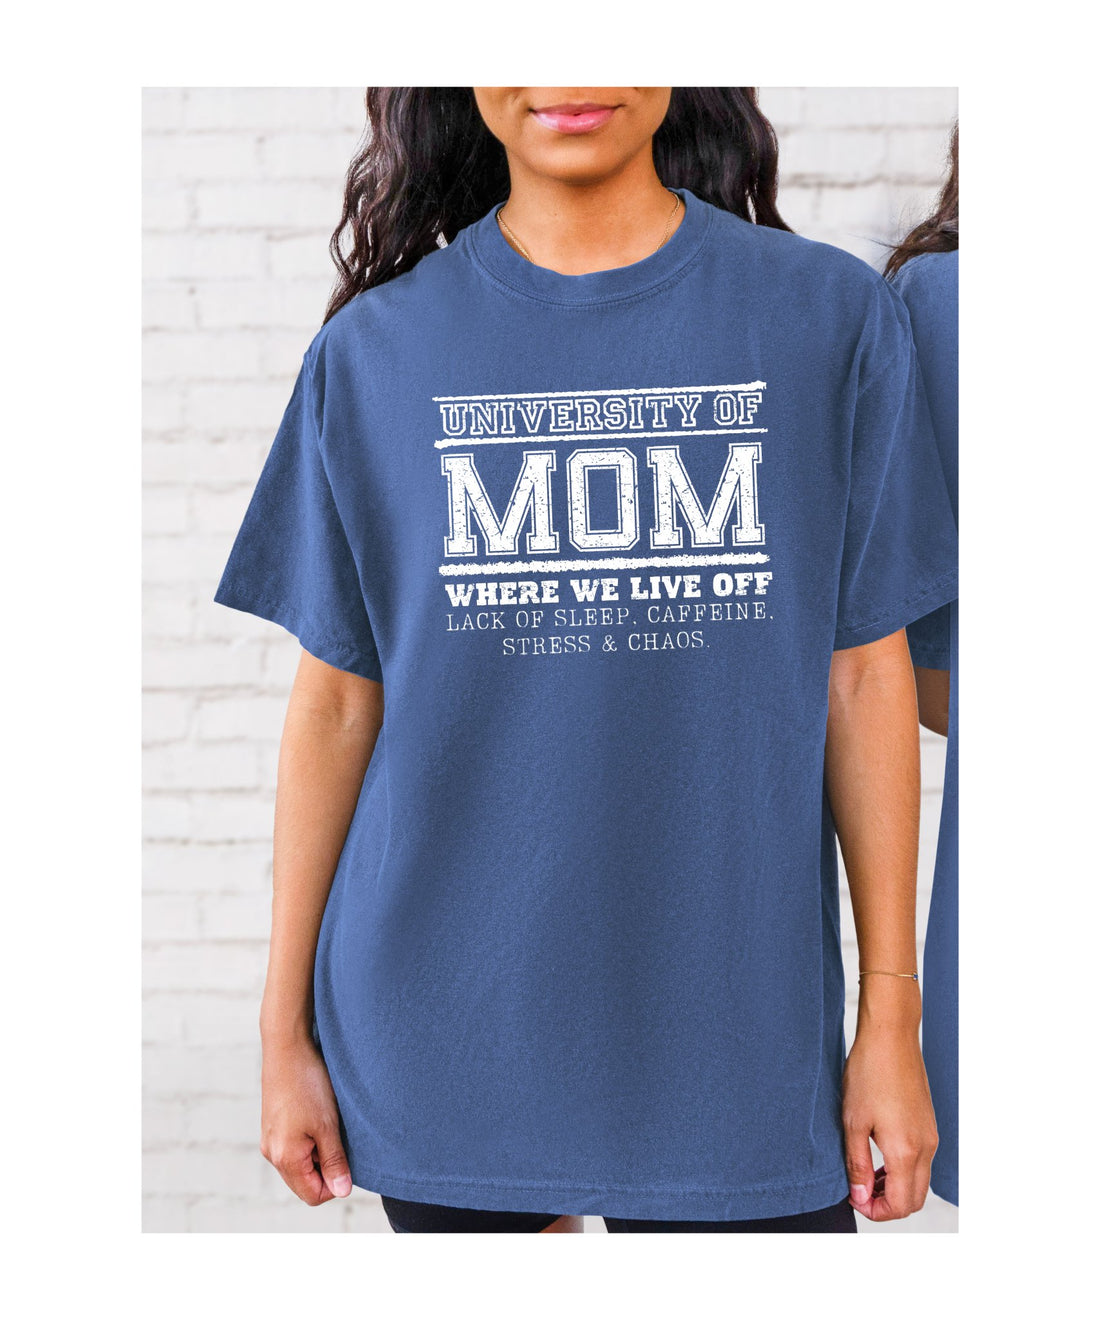 University Of Mom - T-Shirts - Positively Sassy - University Of Mom